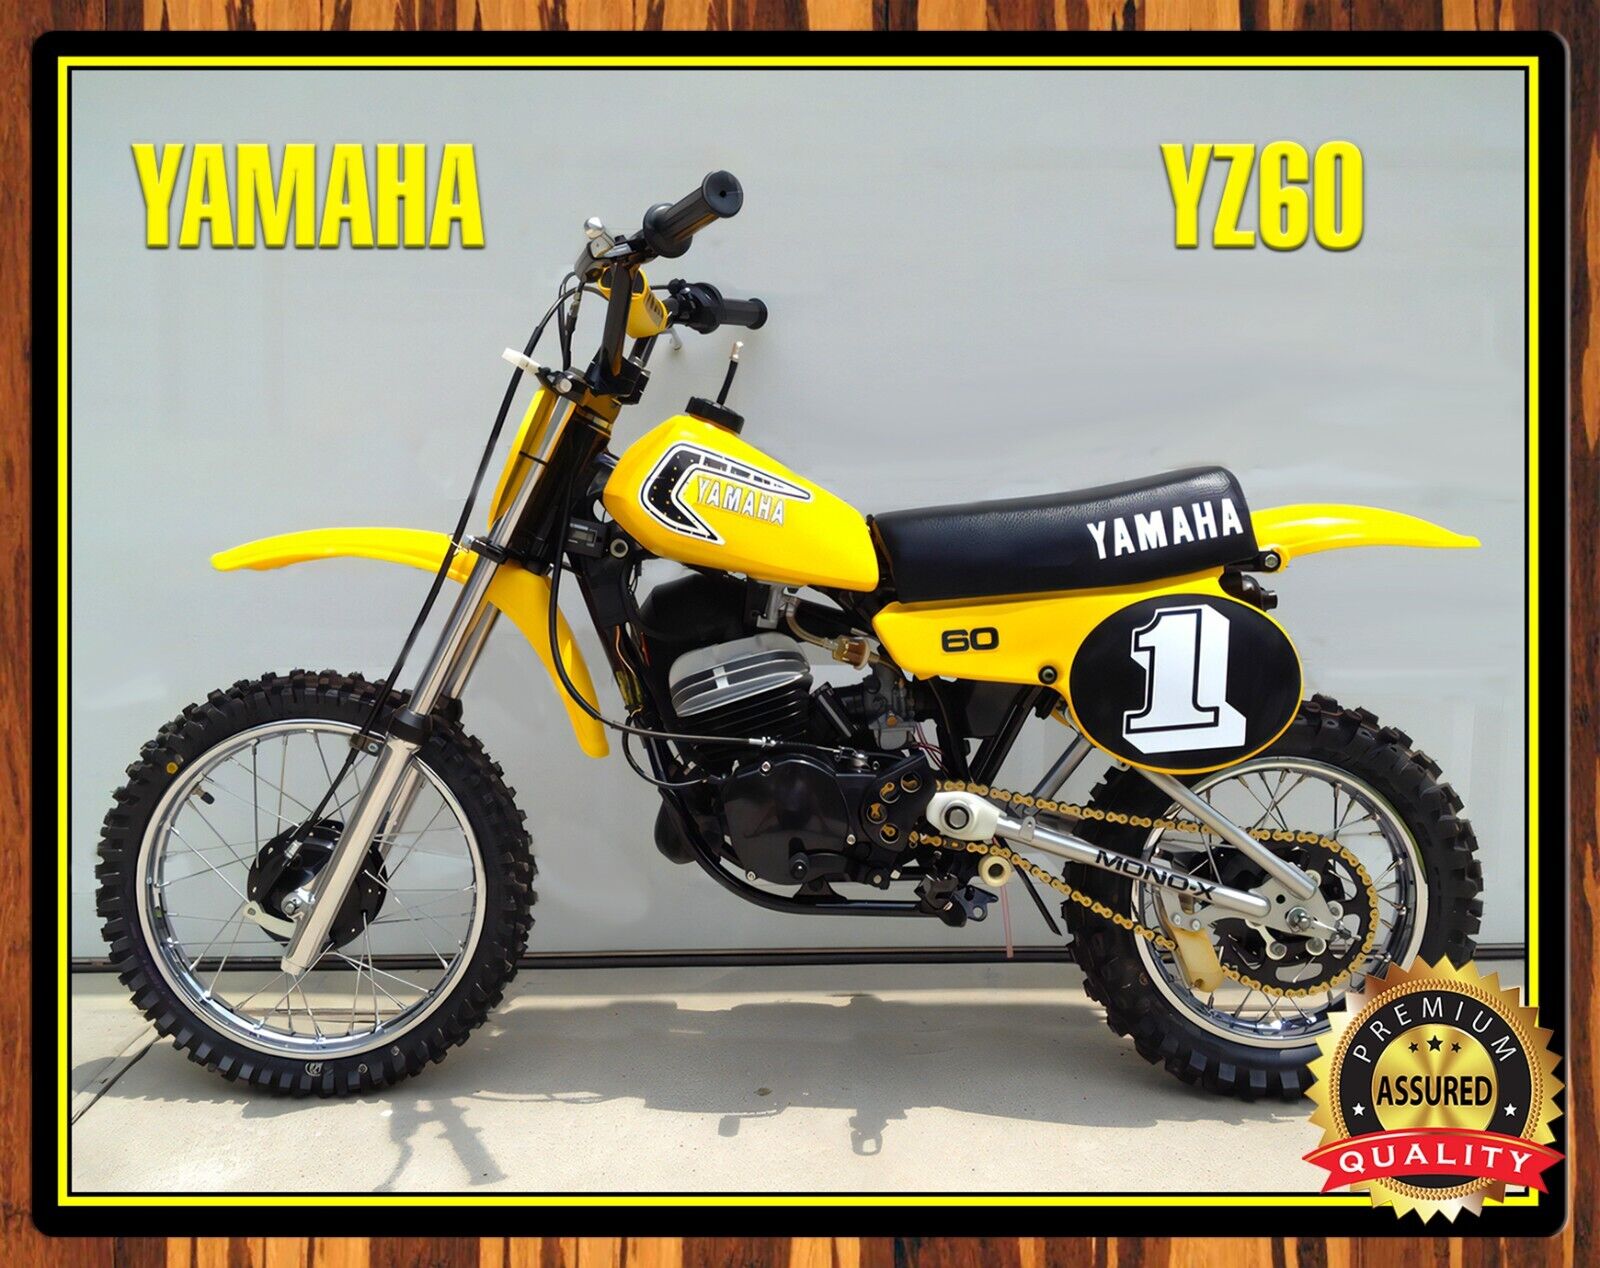 1981 Yamaha -YZ60 - Motocross - Metal Sign 11 x 14